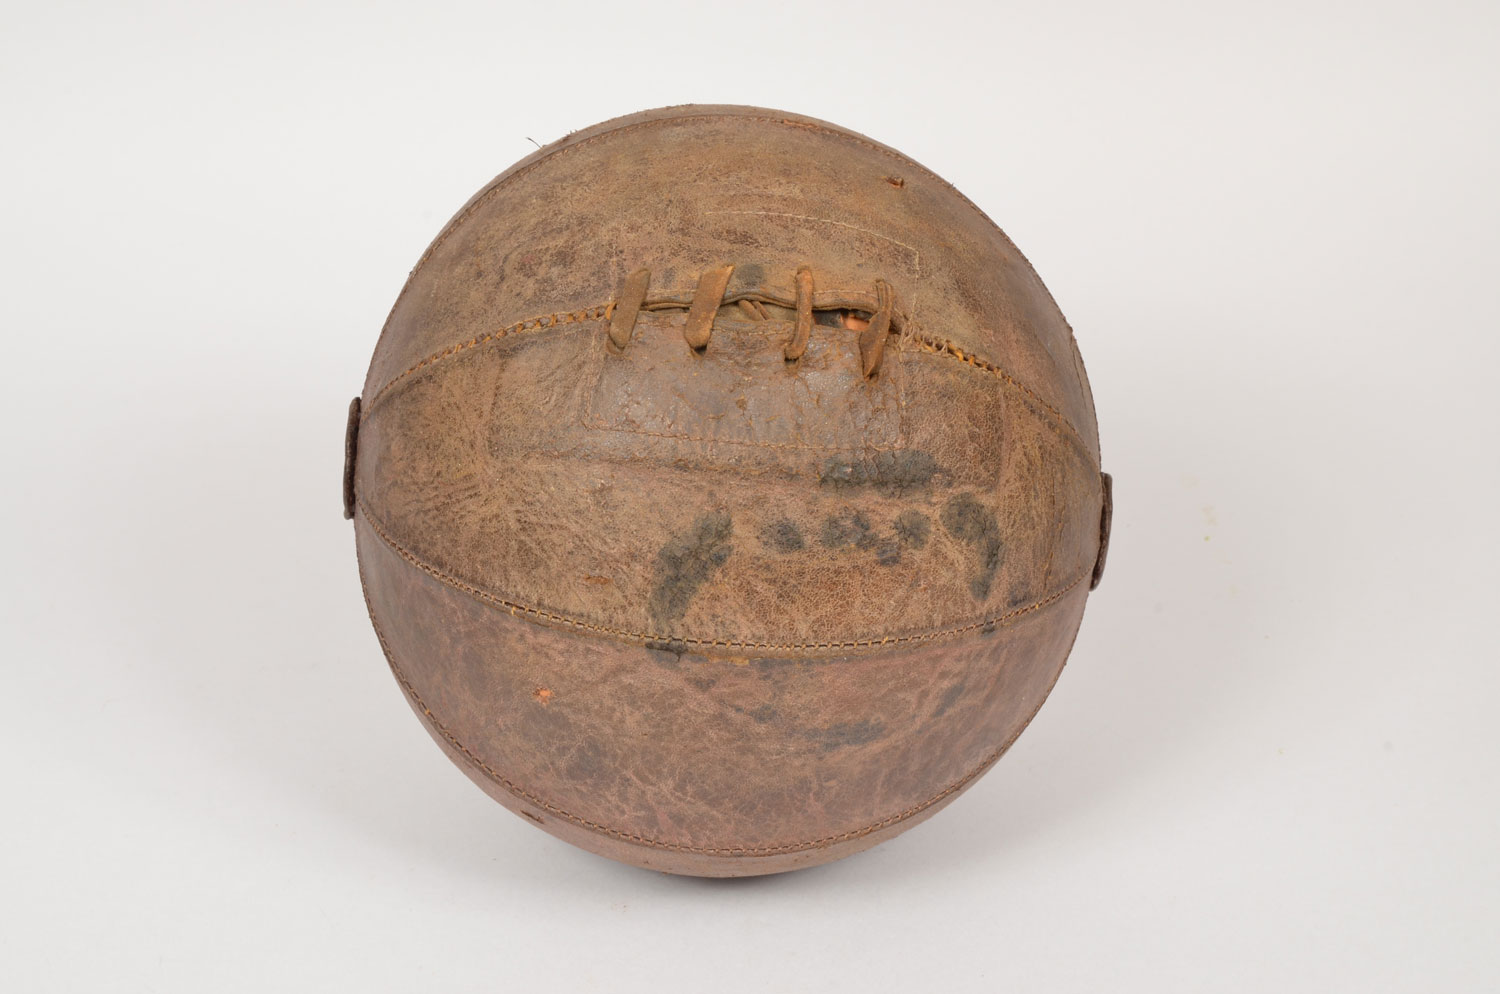 Un des premiers ballons de football en cuir, gonflé grâce à une vessie placée à l’intérieur. Tout est cousu à la main ©ArchivesFFF